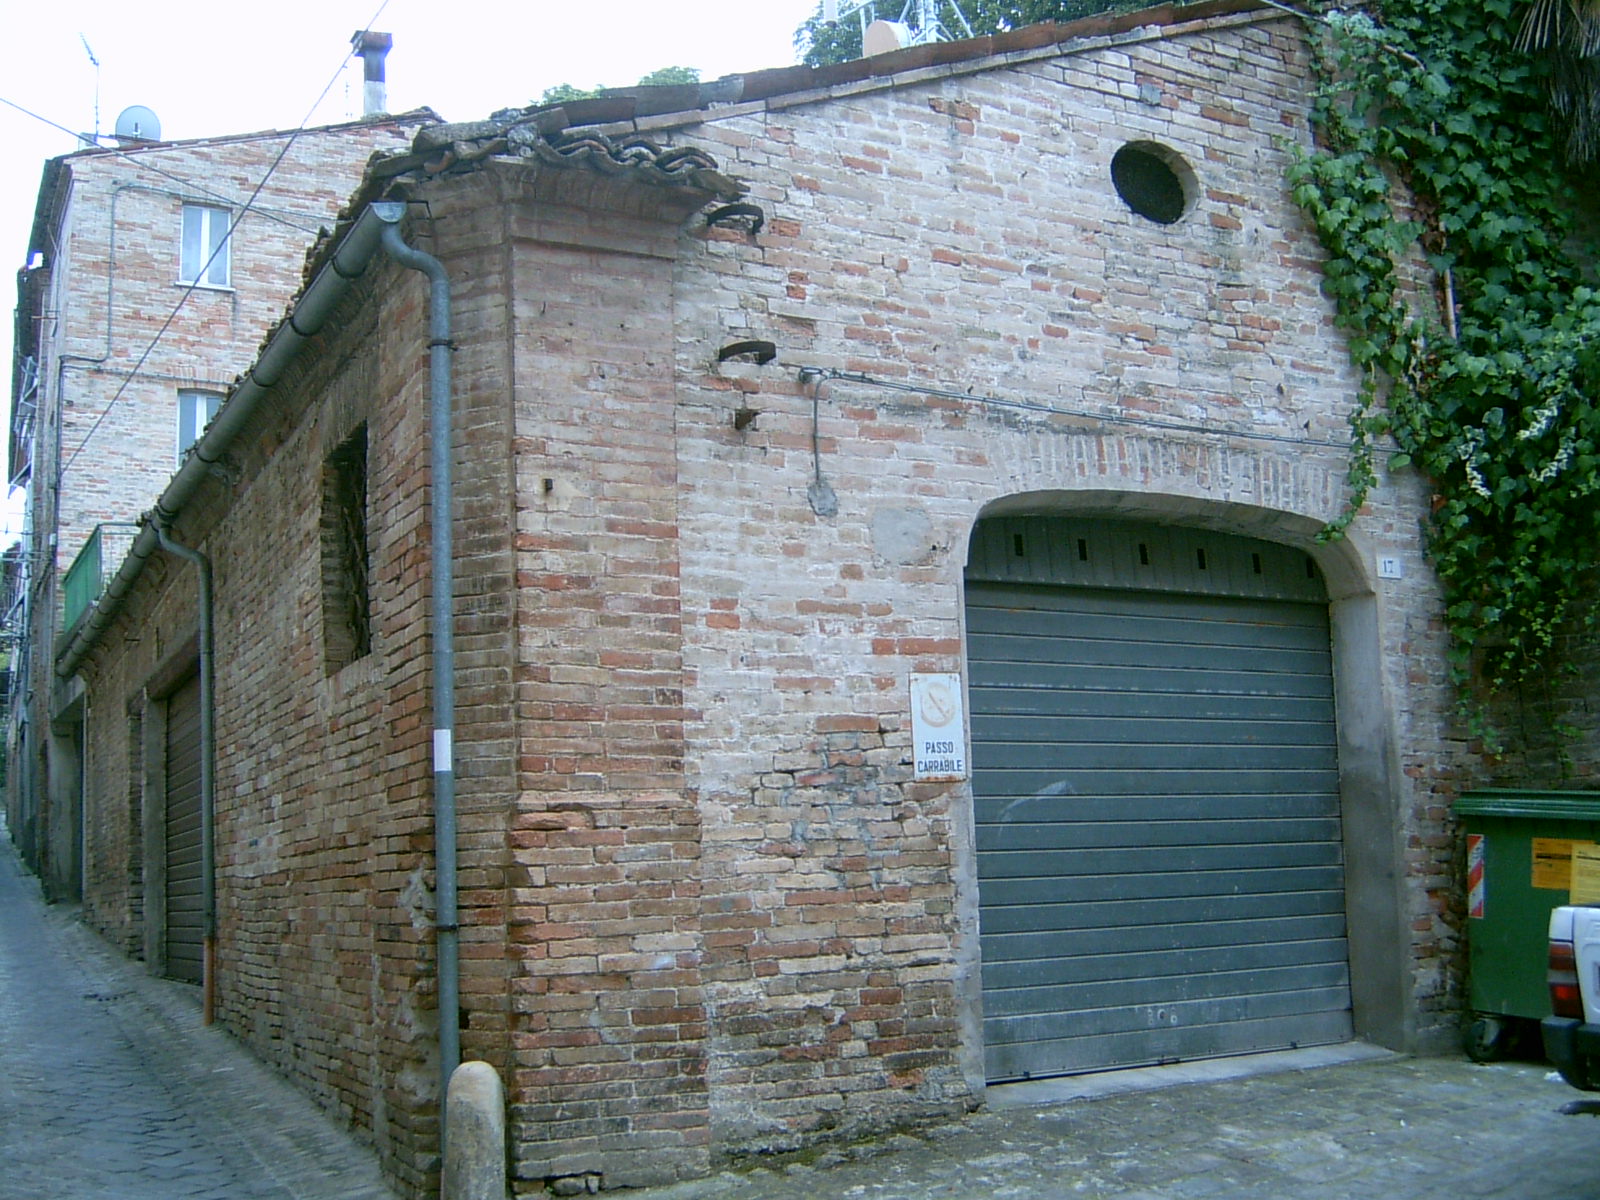 Annesso di Palazzo nobiliare (annesso, edificio di servizio annesso alla residenza) - Montegiorgio (AP) 